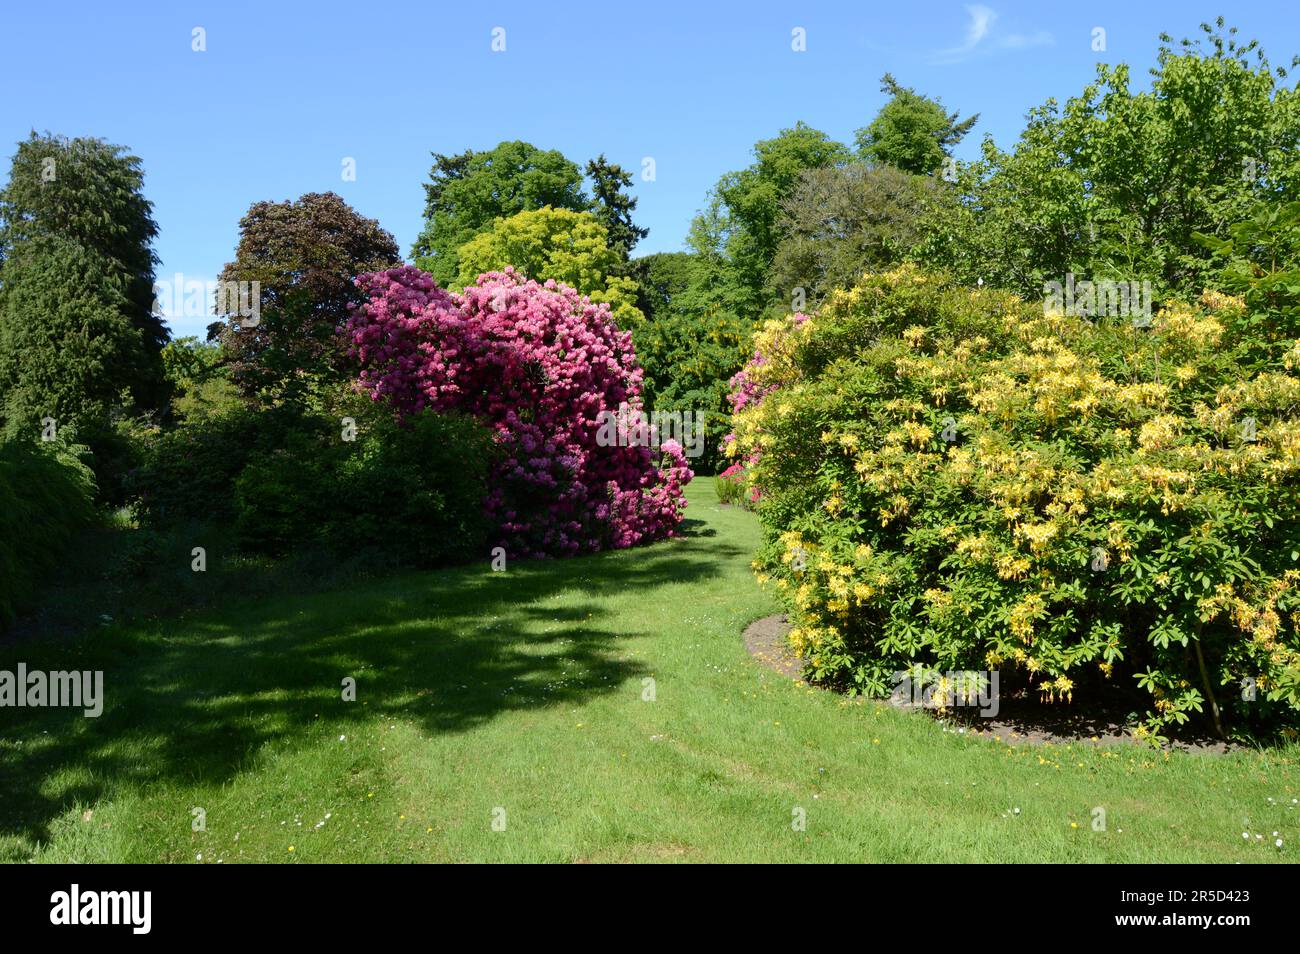 Une profusion de fleurs; la substance que les rêves d'amoureux de rhododendron sont faits Banque D'Images